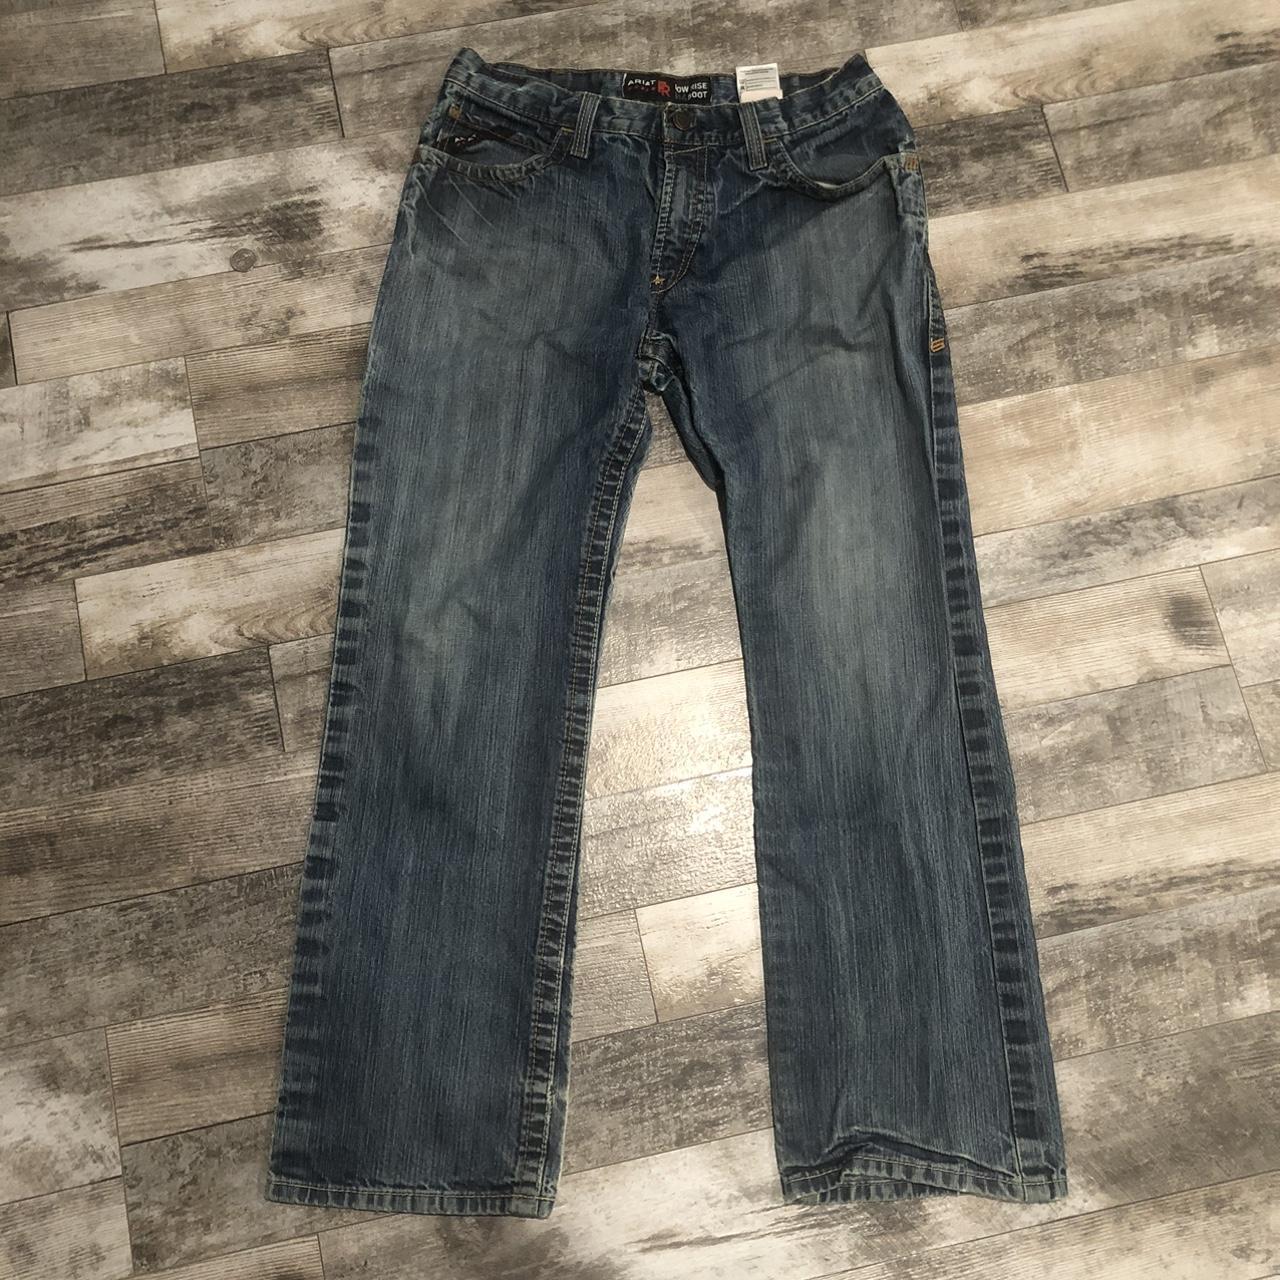 Vintage Ariat Distressed Jeans Pants Size 33 x... - Depop